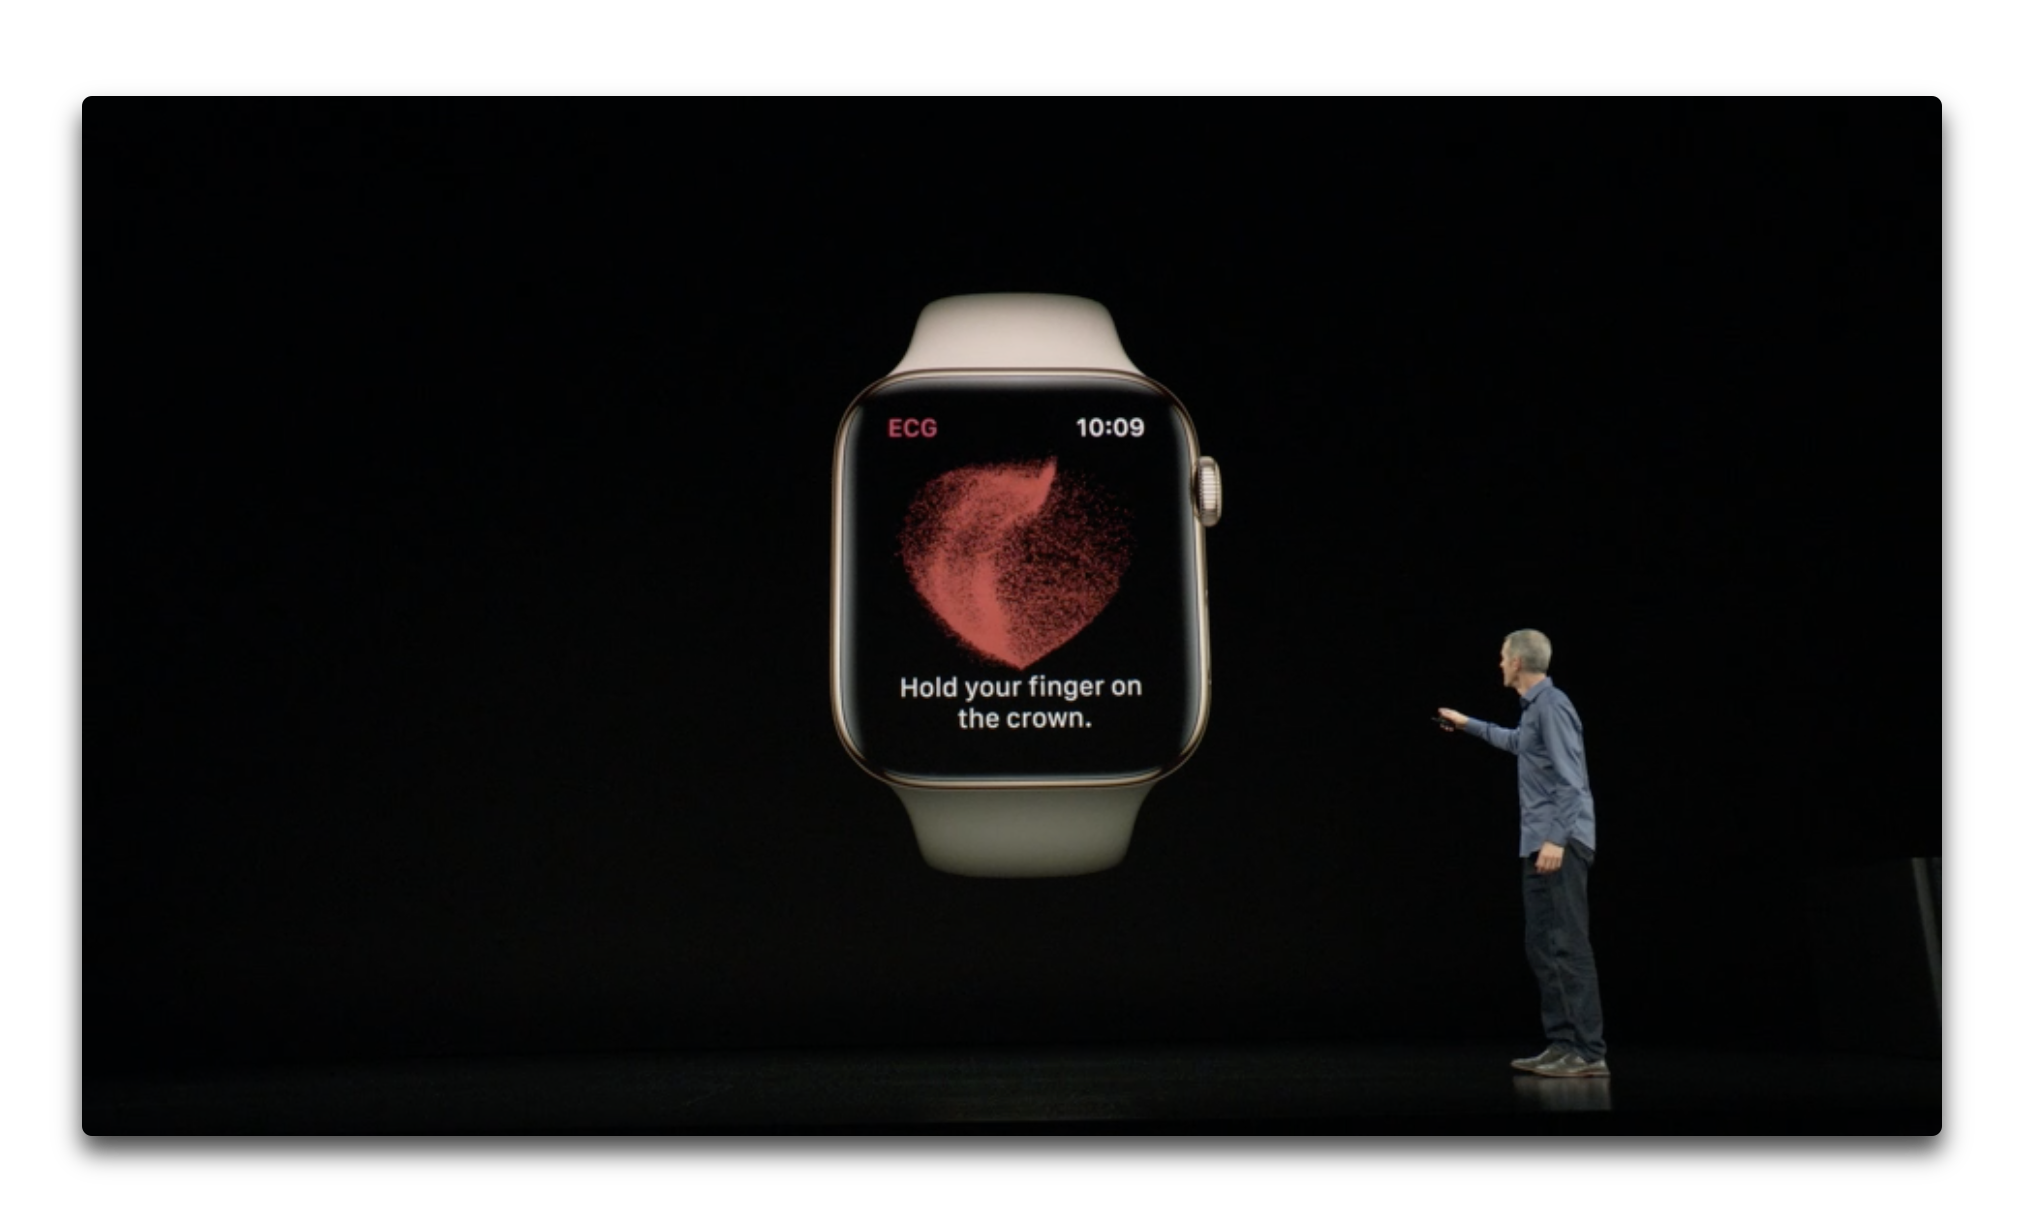 Apple Watch Series 4の心電図(ECG)機能は、スペシャルイベントの1日前にFDA認可を受る